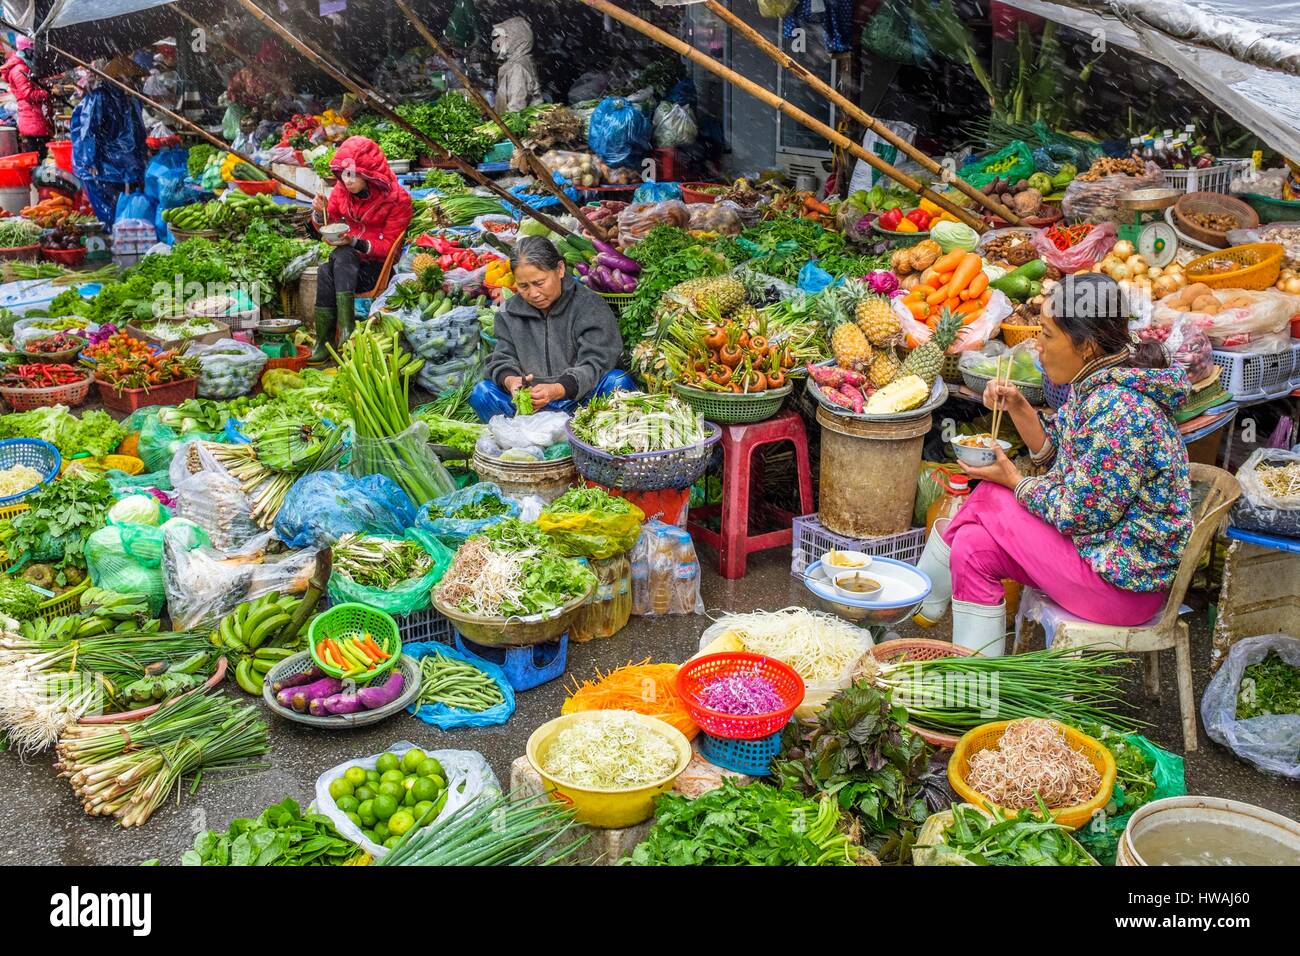 Vietnam, North Central Coast region, Thua Thien-Hue province, Hue, Dong Ba market on a rainy day Stock Photo